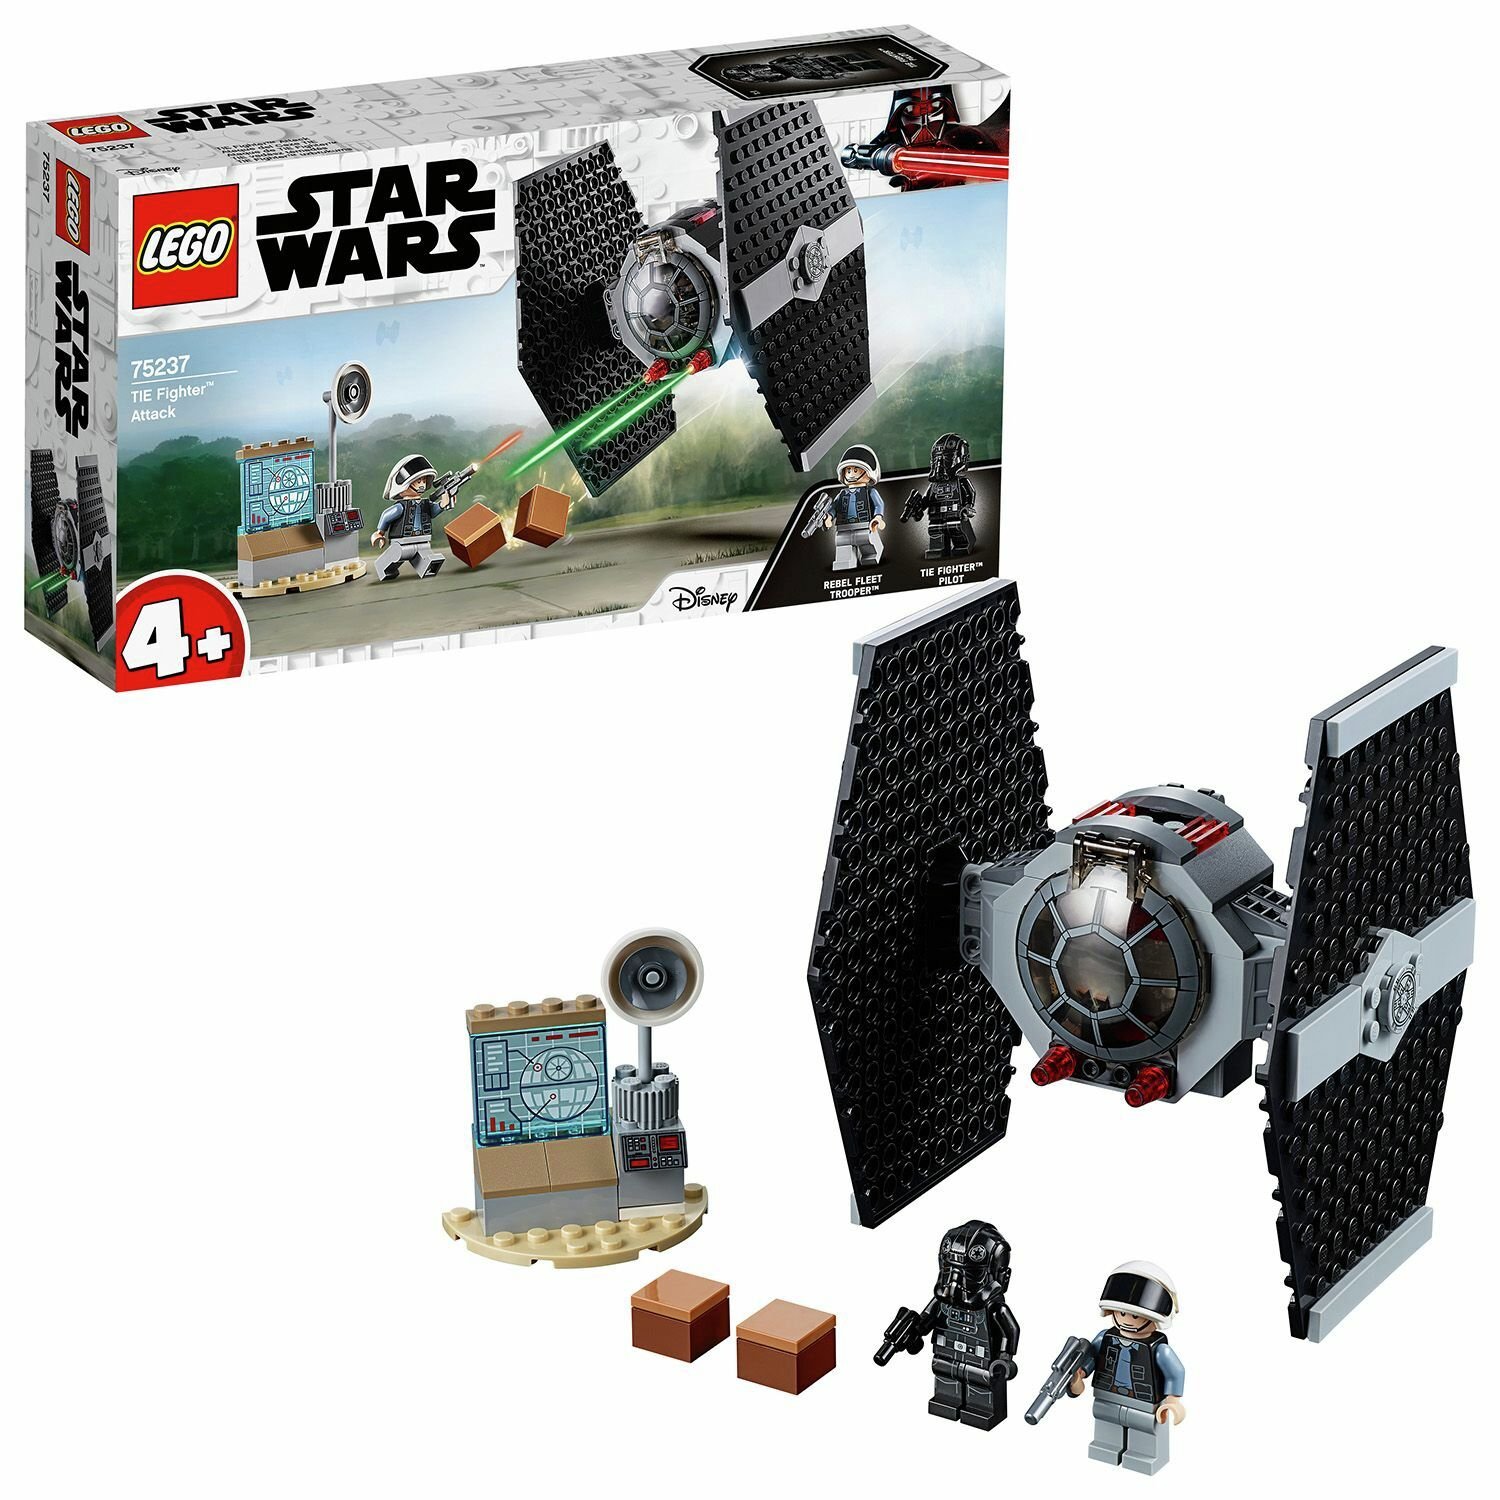 Massage strand Stimulans LEGO Star Wars Junior Tie Fighter Spaceship Toy - 75237 (8907356) | Argos  Price Tracker | pricehistory.co.uk